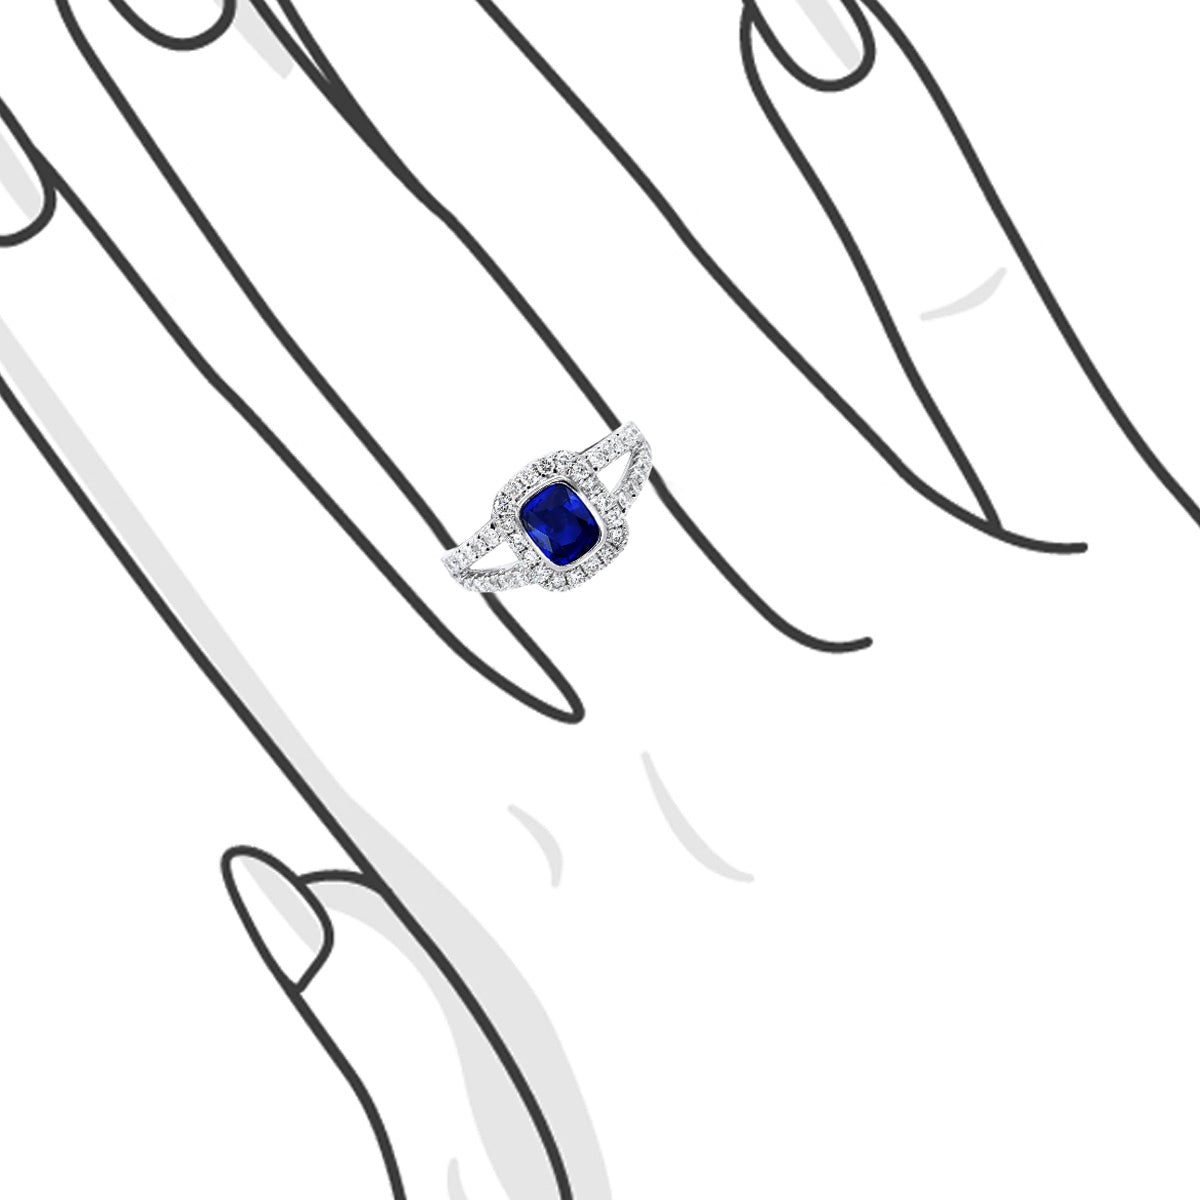 典雅包鑲枕形藍寶石圍石岔臂鑽石戒指 - WILLS JEWELLERY